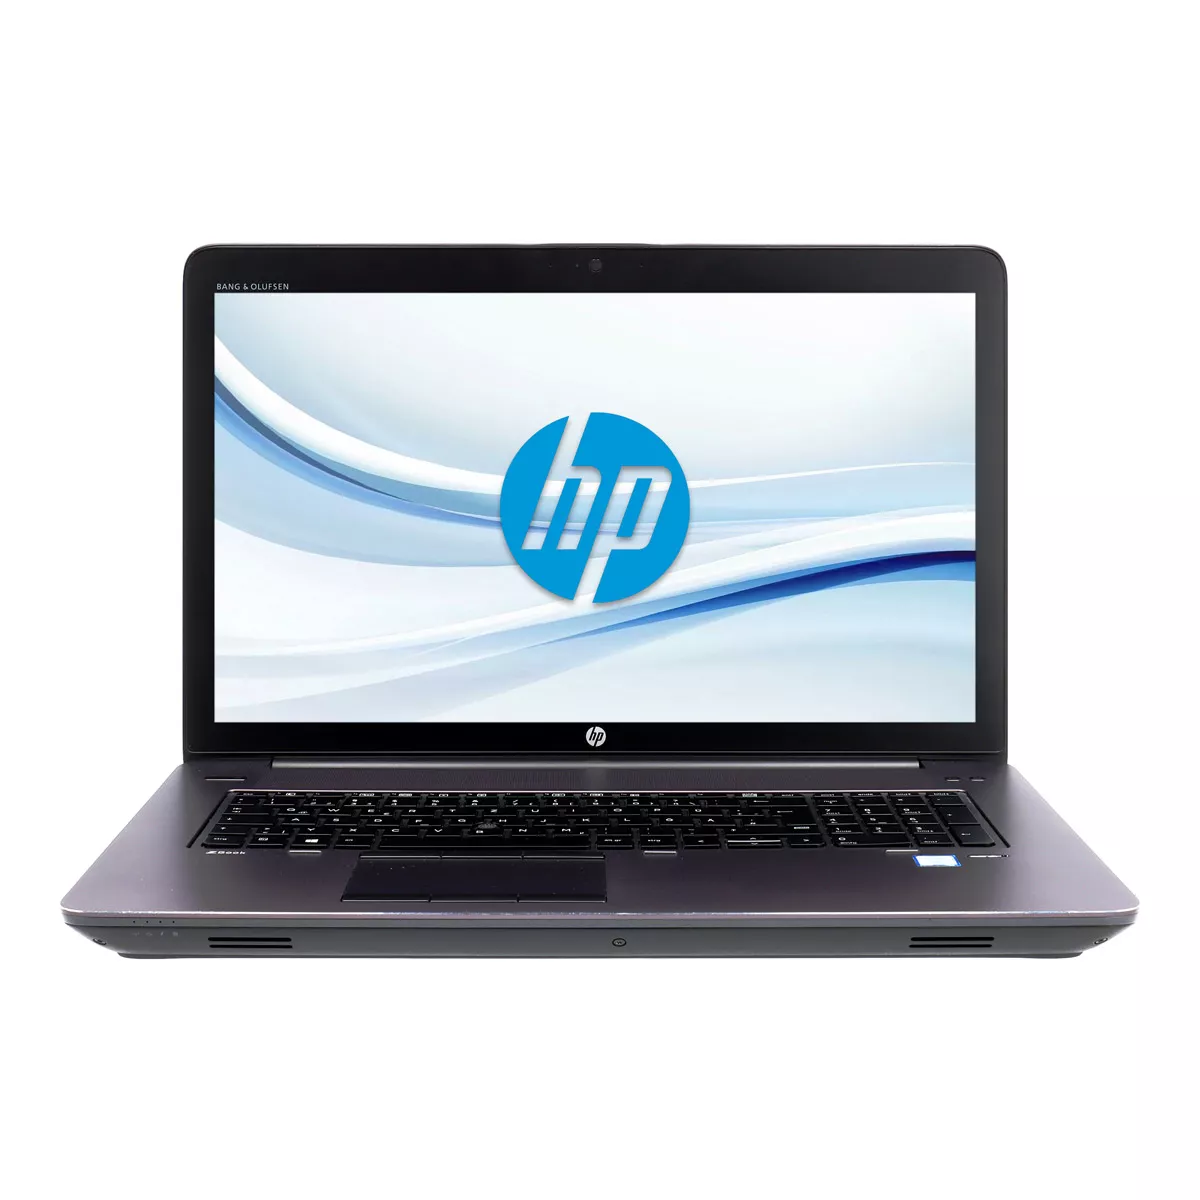 HP ZBook 17 G3 Core i7 6820HQ nVidia Quadro M3000M 4,0 GB Full-HD 500 GB M.2 SSD Webcam A+